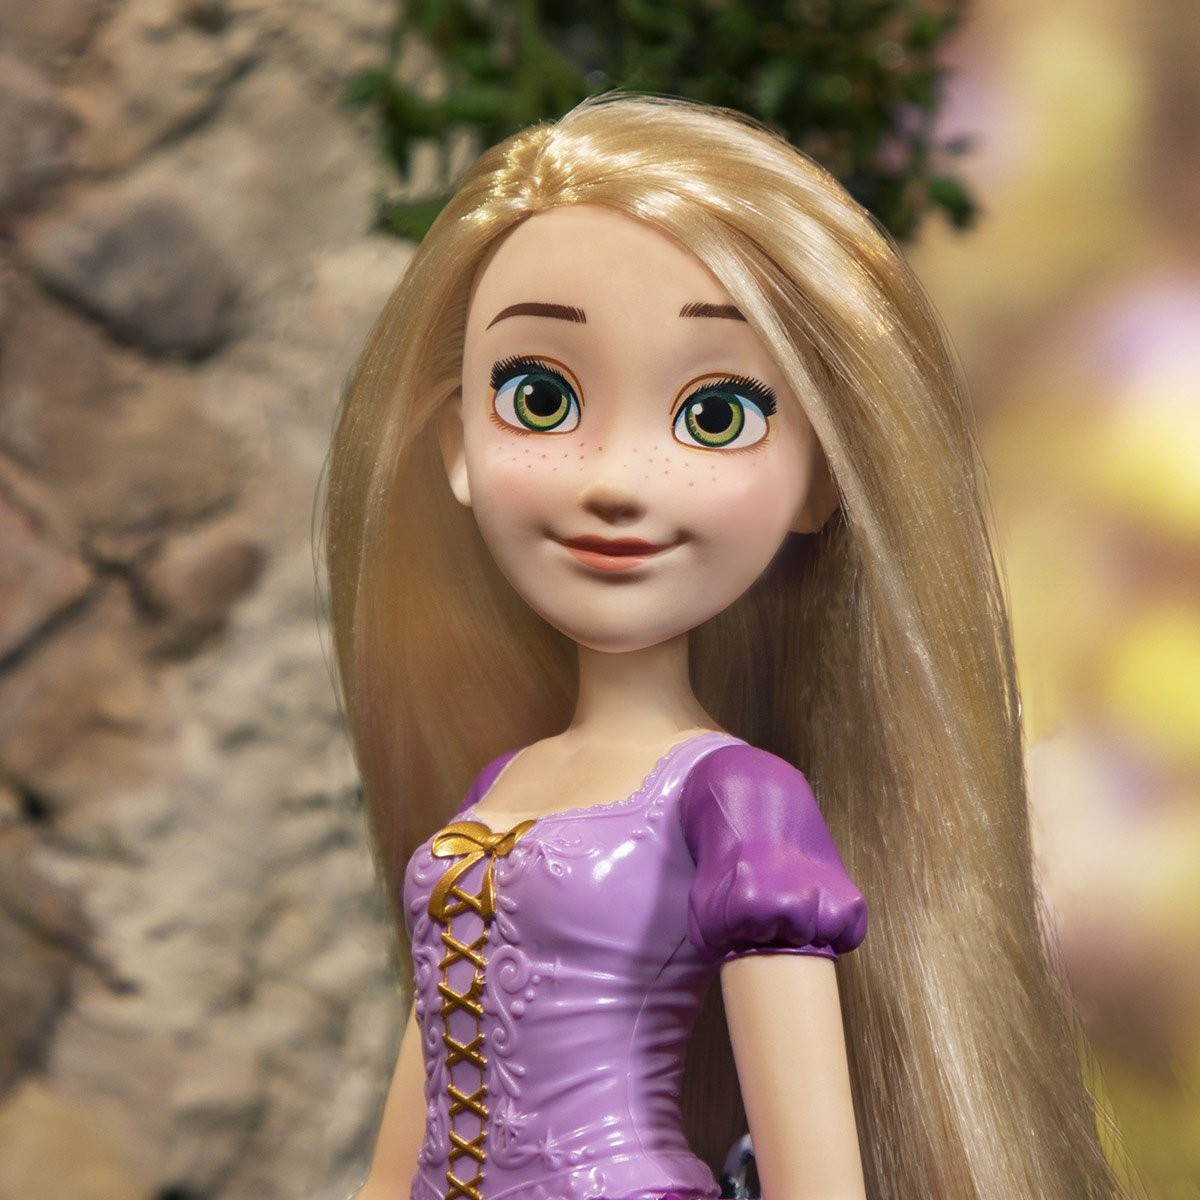 Disney Princesses Poupées Raiponce chantante 38 cm - La Grande Récré